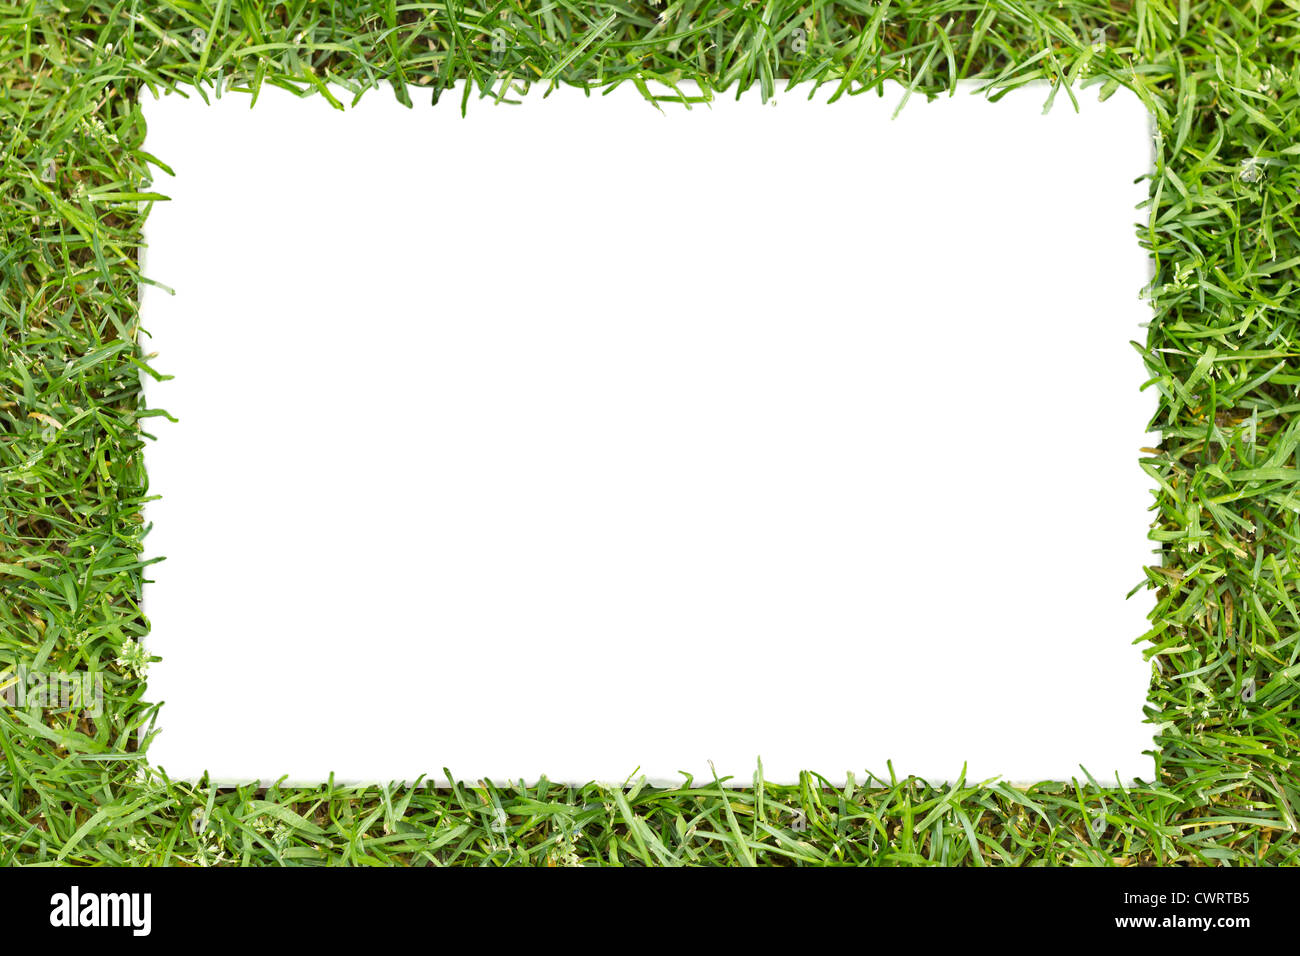 Bastidor de hierba verde con texto blanco en forma de rectángulo. Foto de stock